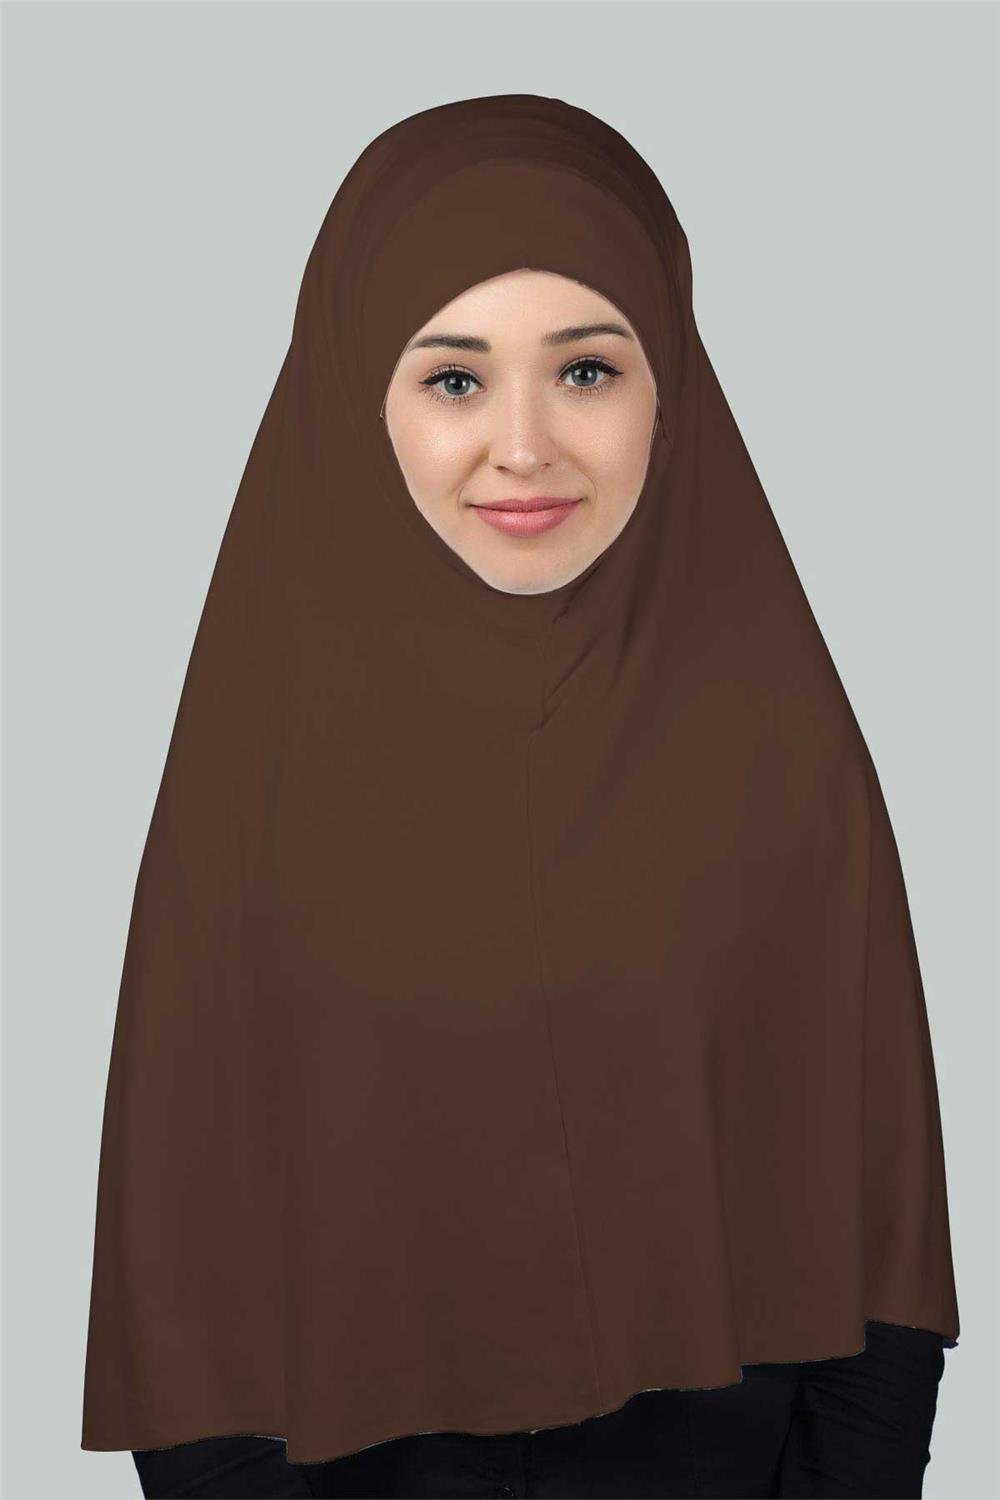 Hazır Türban Peçeli Pratik Eşarp Tesettür Nikaplı Hijab - Namaz Örtüsü  Sufle (3XL) - Koyu Çikolata